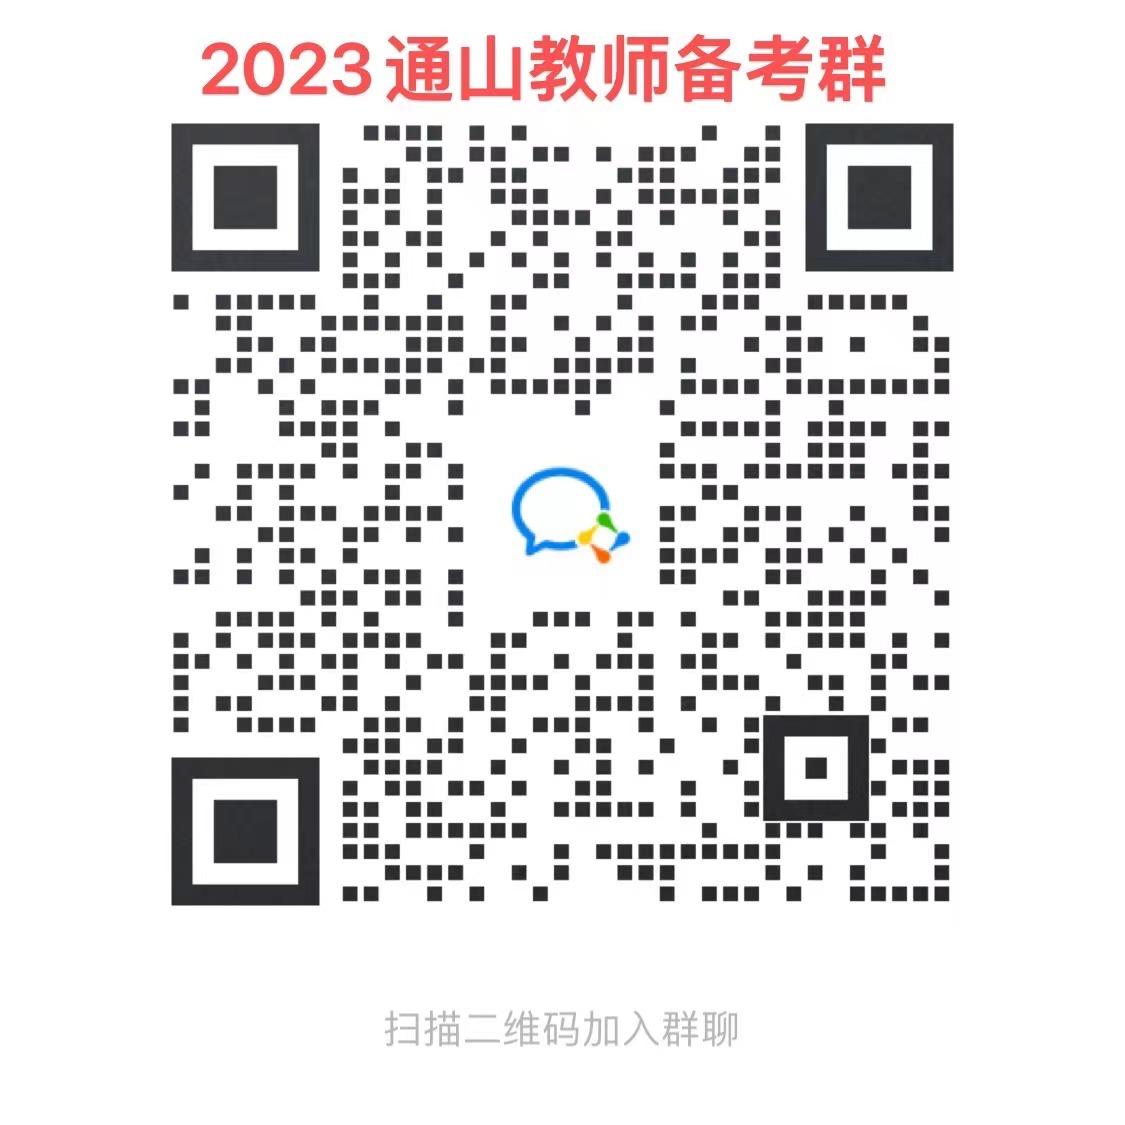 2023年咸宁通山县中小学教师补员招聘144人公告